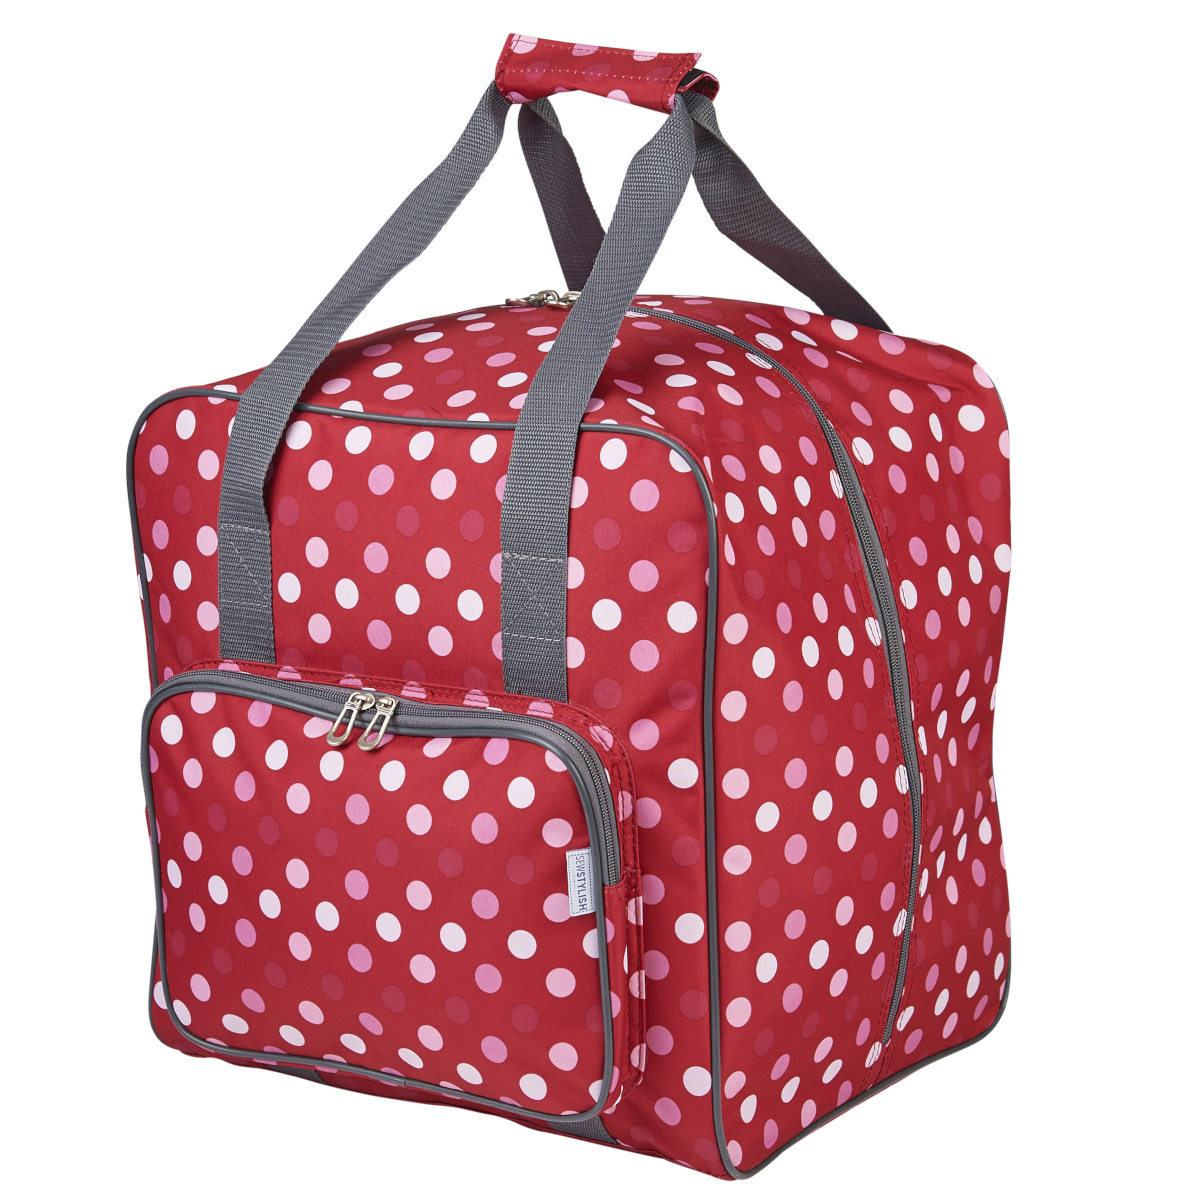 Buy Red Polka Large Overlocker Bag